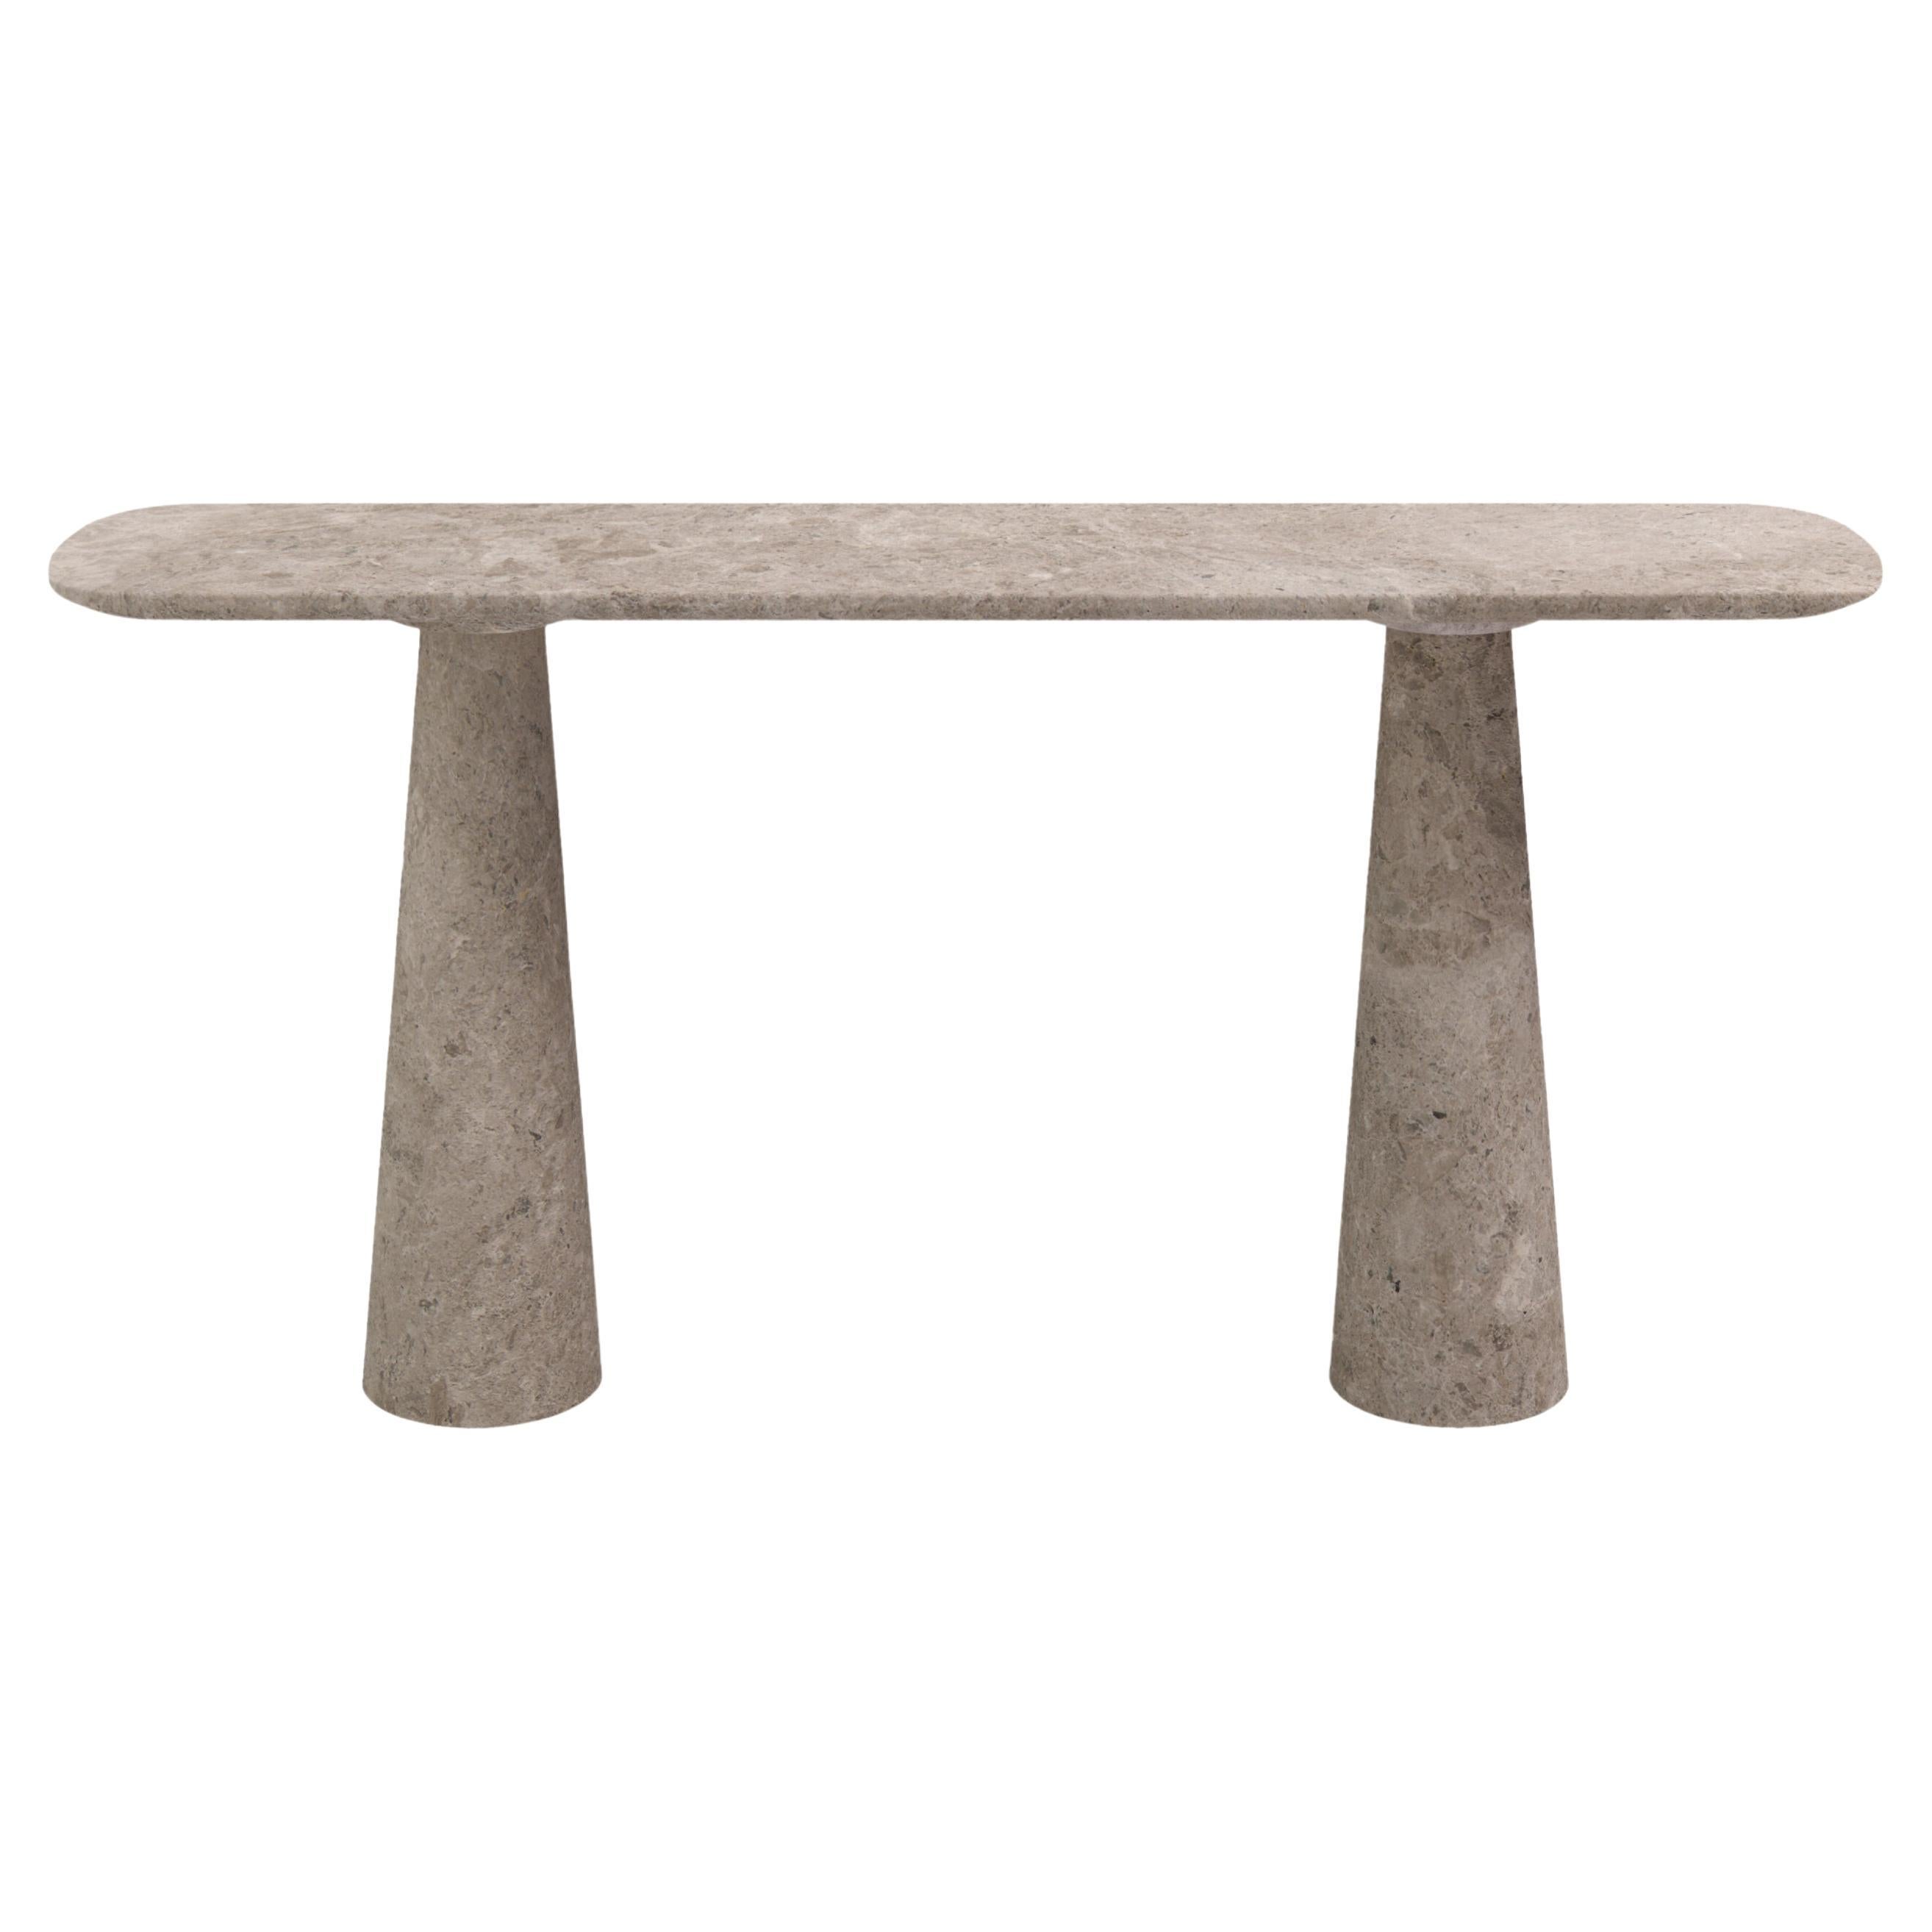 FORM(LA) Cono Console Table 72”L x 15”W x 33”H Tundra Gray Marble For Sale